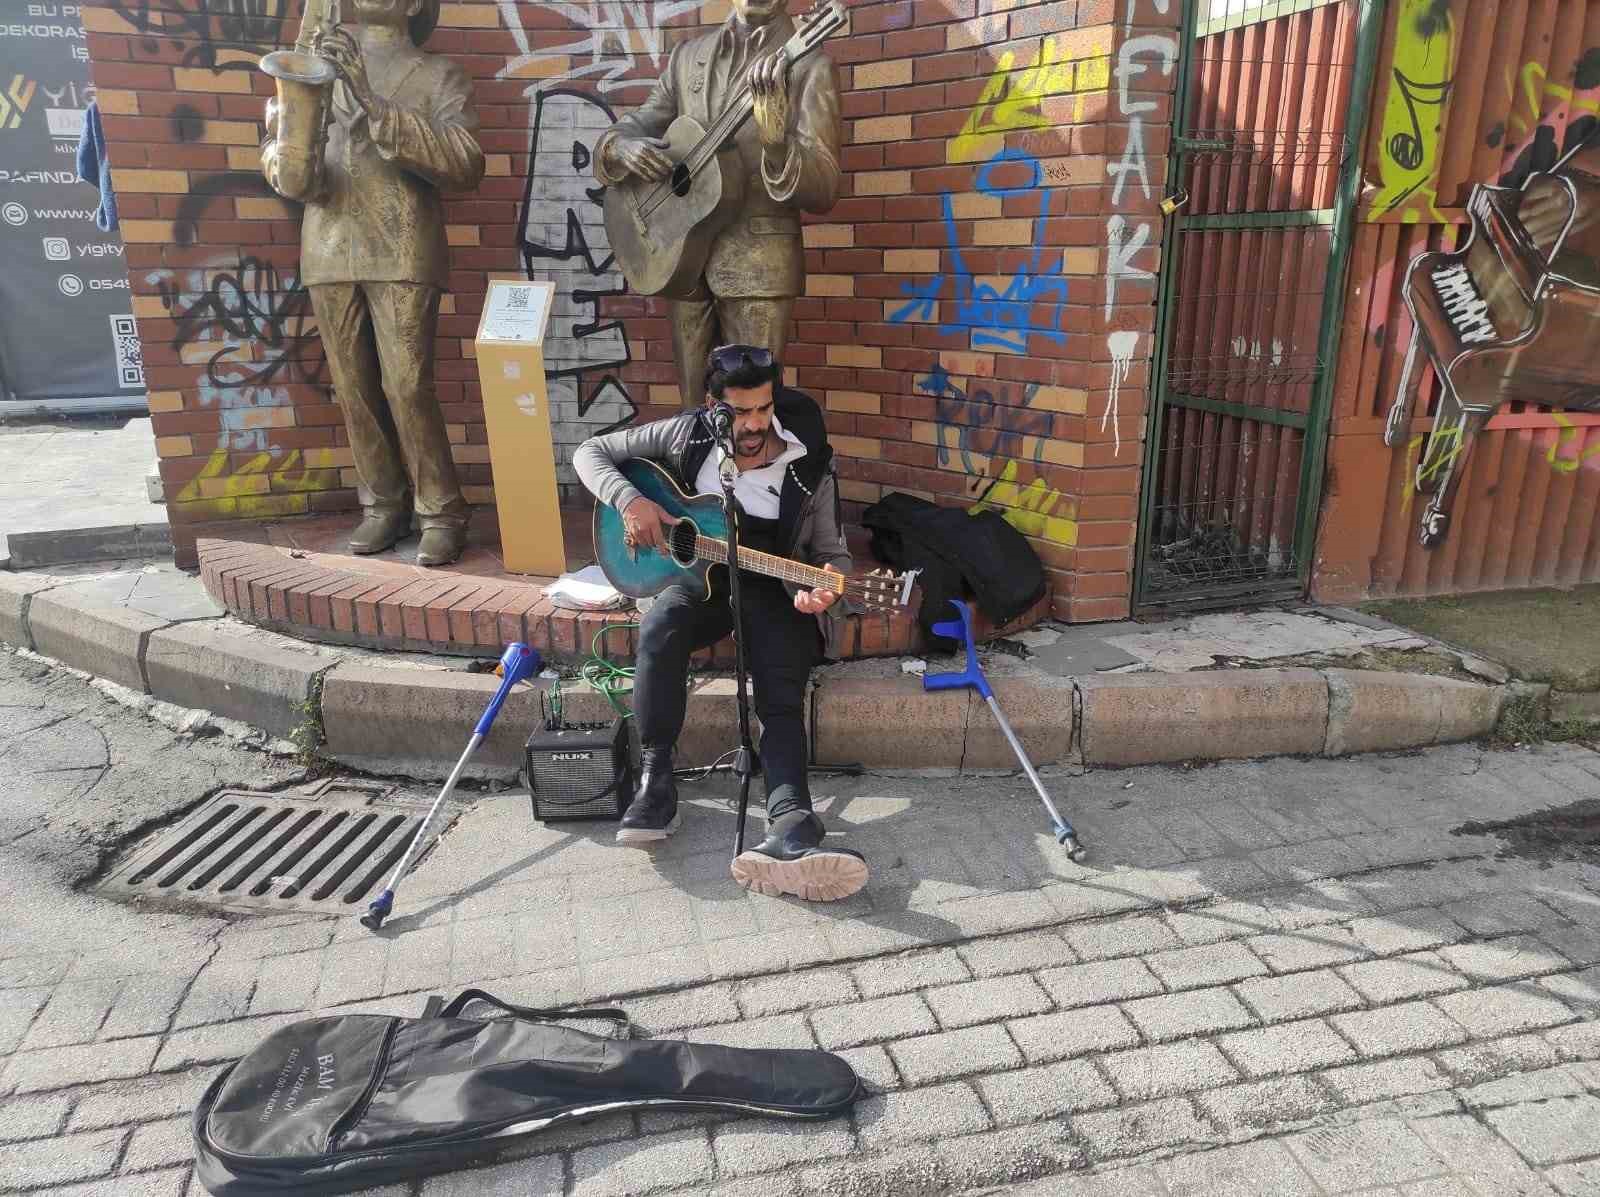 Yürüme engelli sanatçı şarkı söylemek için yaz-kış sokakta